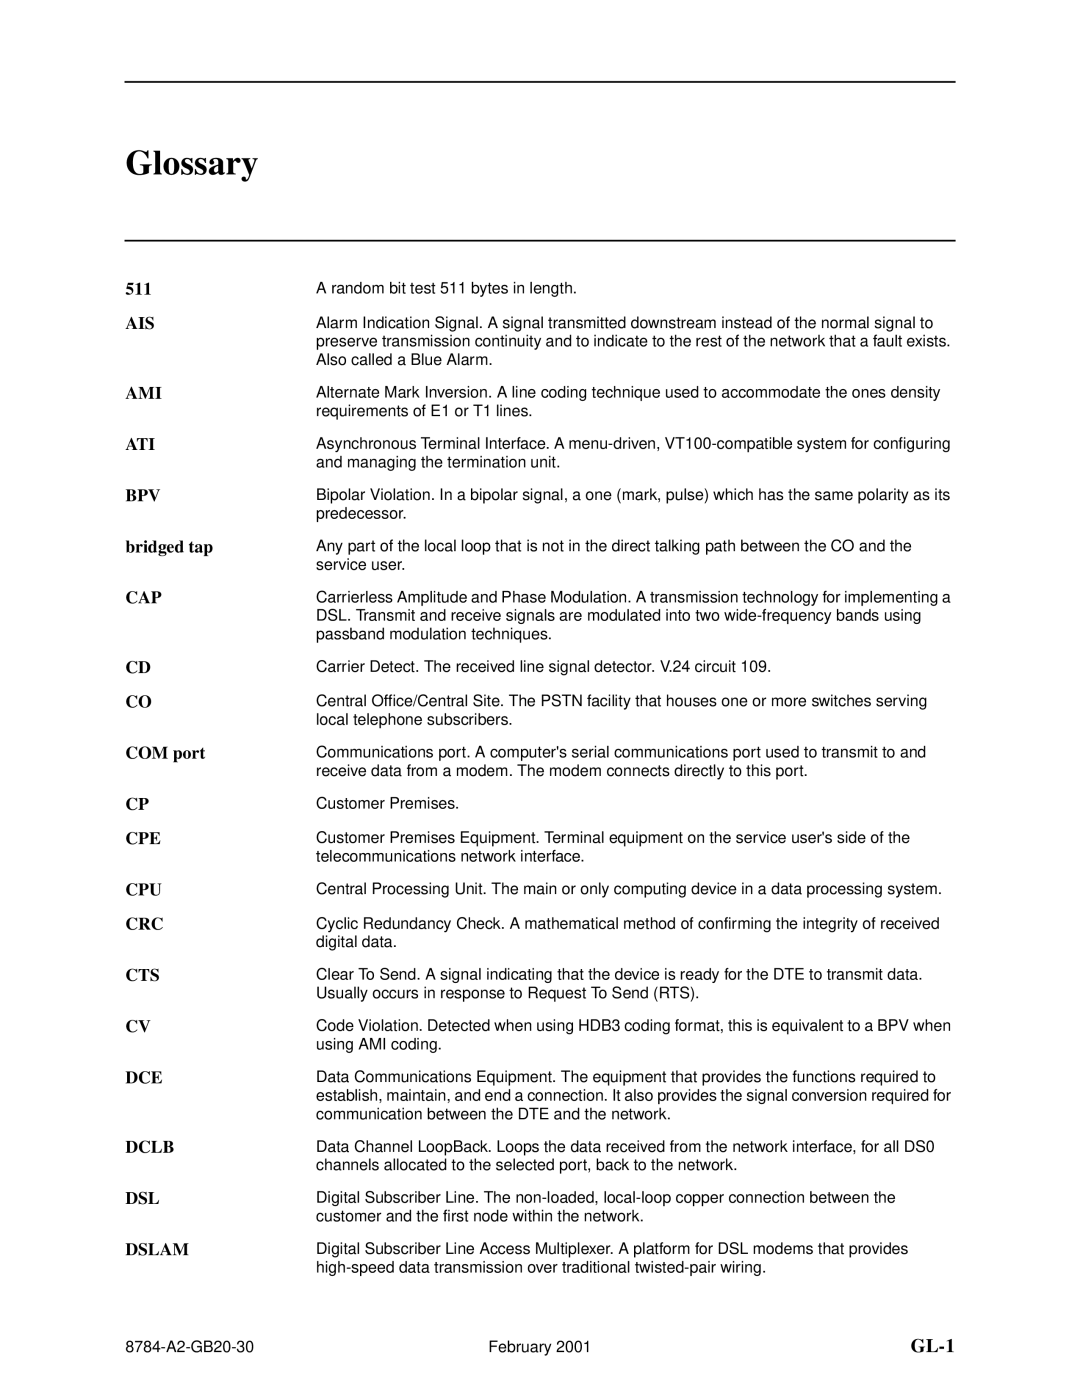 Paradyne 8784 manual Glossary, GL-1 